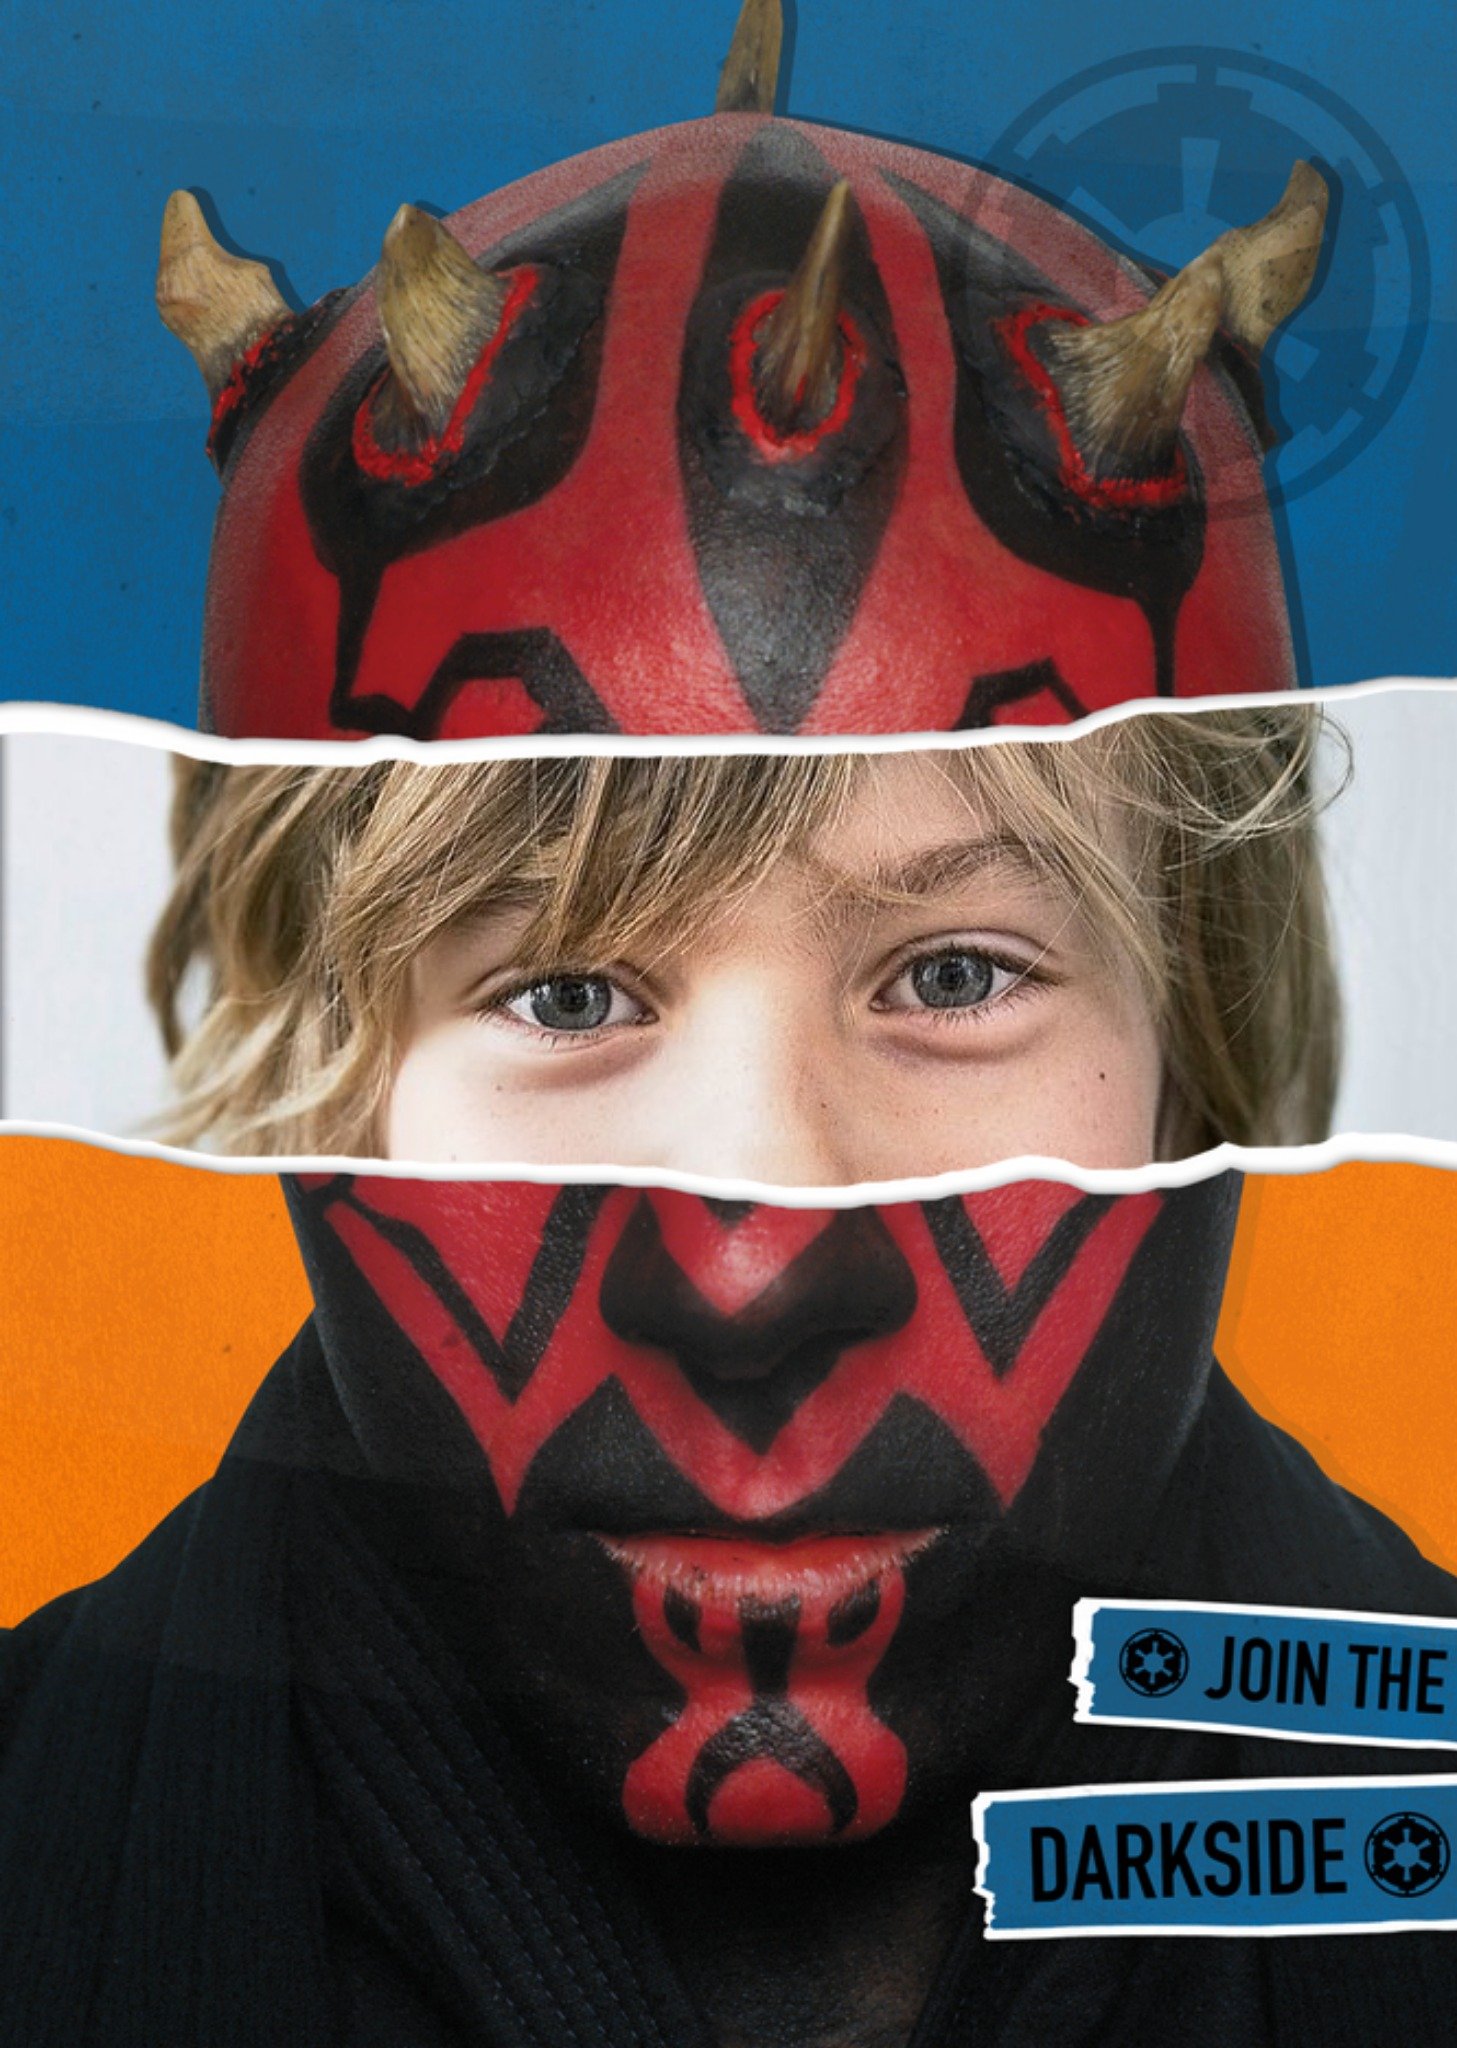 Disney Star Wars The Darkside Face Photo Card Ecard